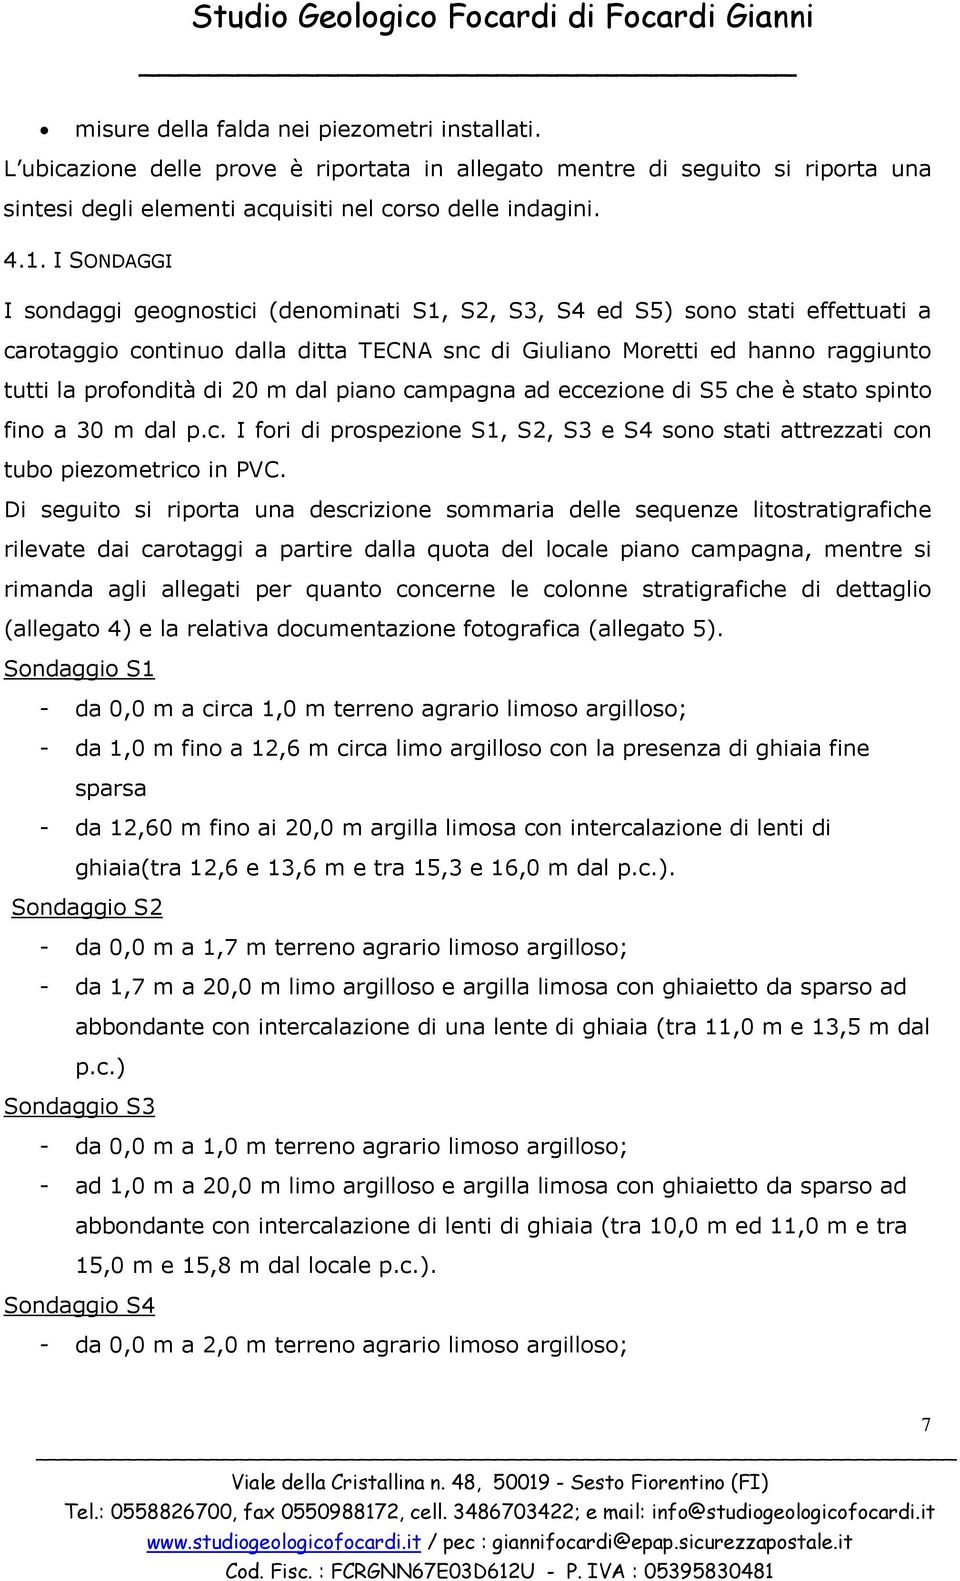 I SONDAGGI I sondaggi geognostici (denominati S1, S2, S3, S4 ed S5) sono stati effettuati a carotaggio continuo dalla ditta TECNA snc di Giuliano Moretti ed hanno raggiunto tutti la profondità di 20